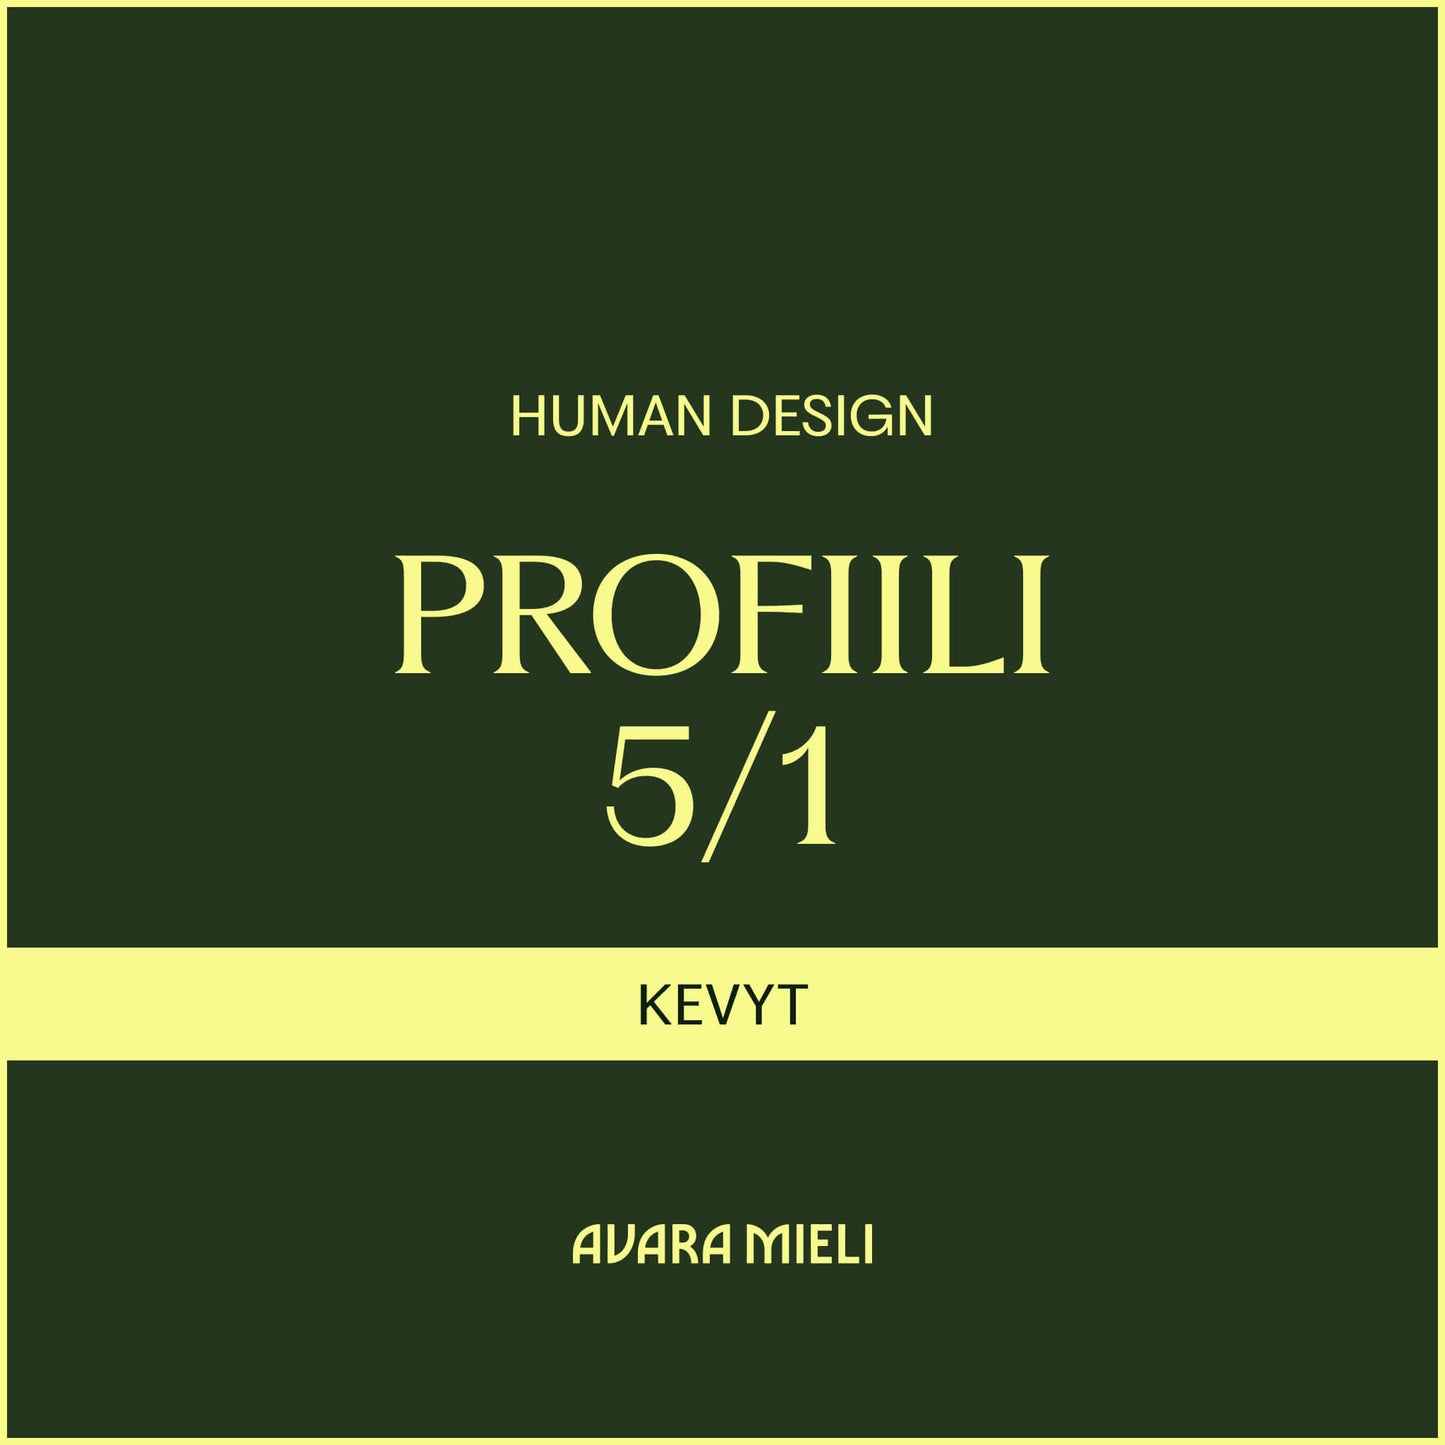 Human Design Profiili 5/1